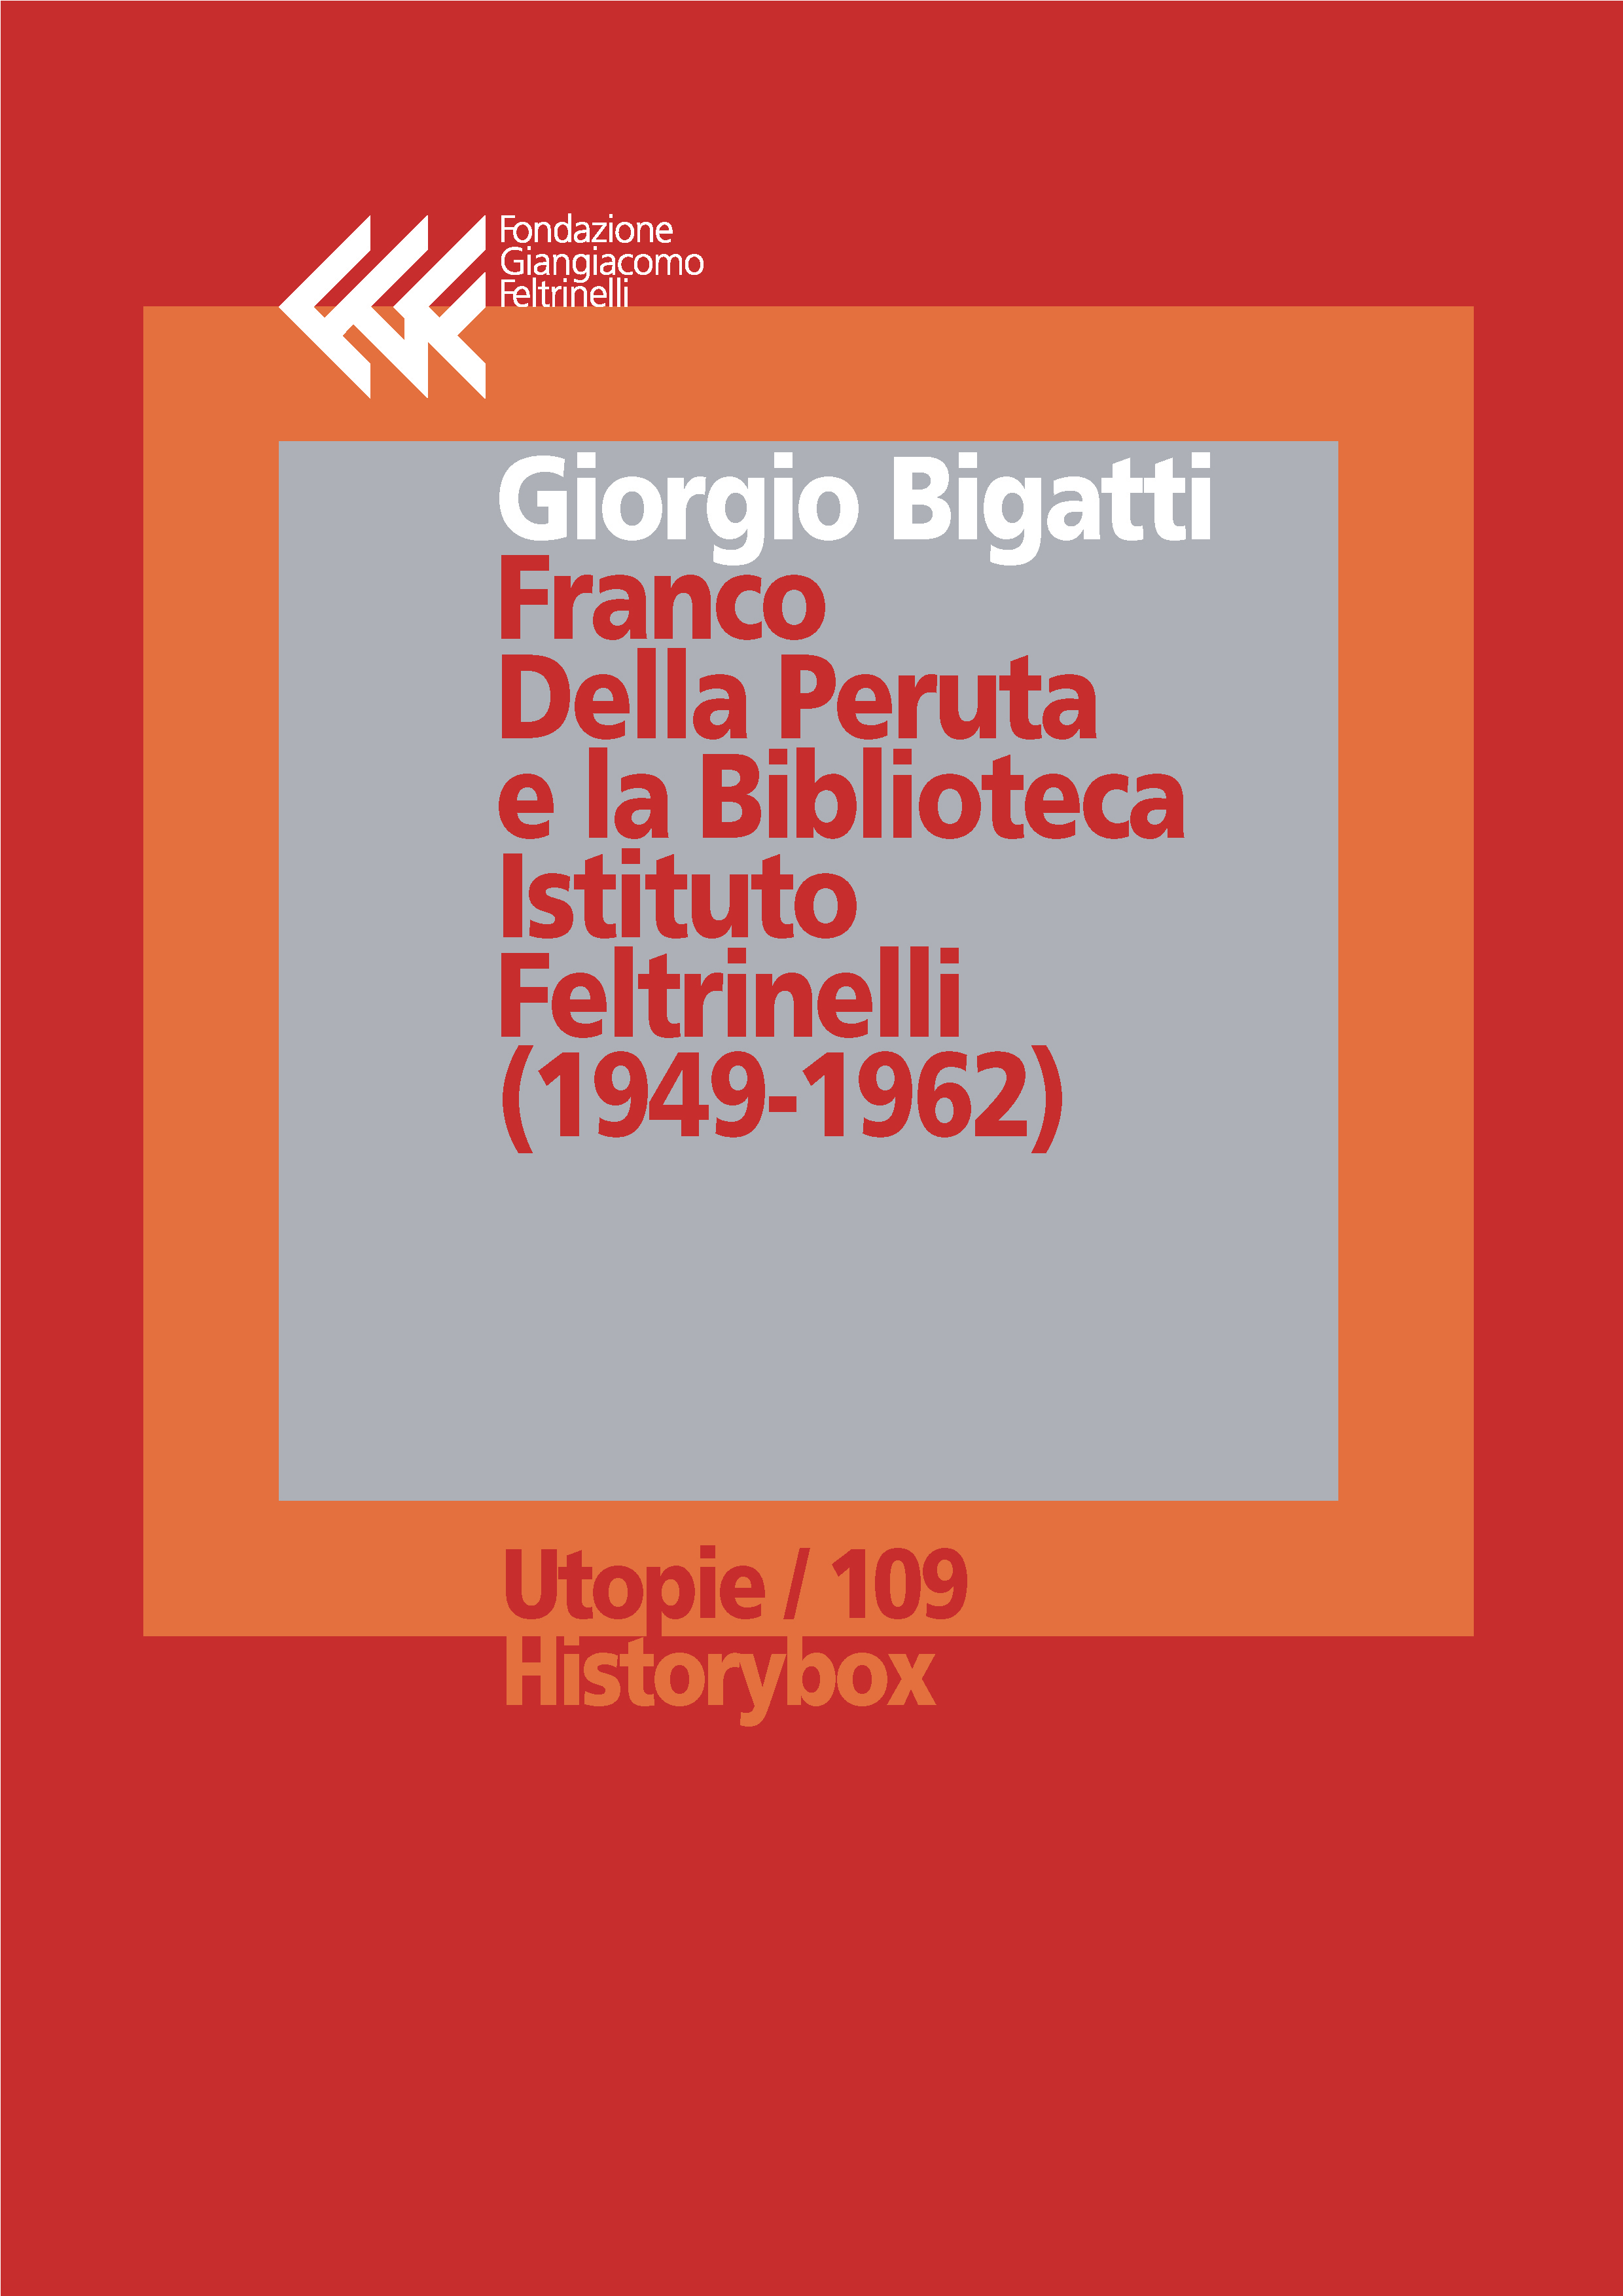 Franco Della Peruta e la Biblioteca Istituto Feltrinelli
